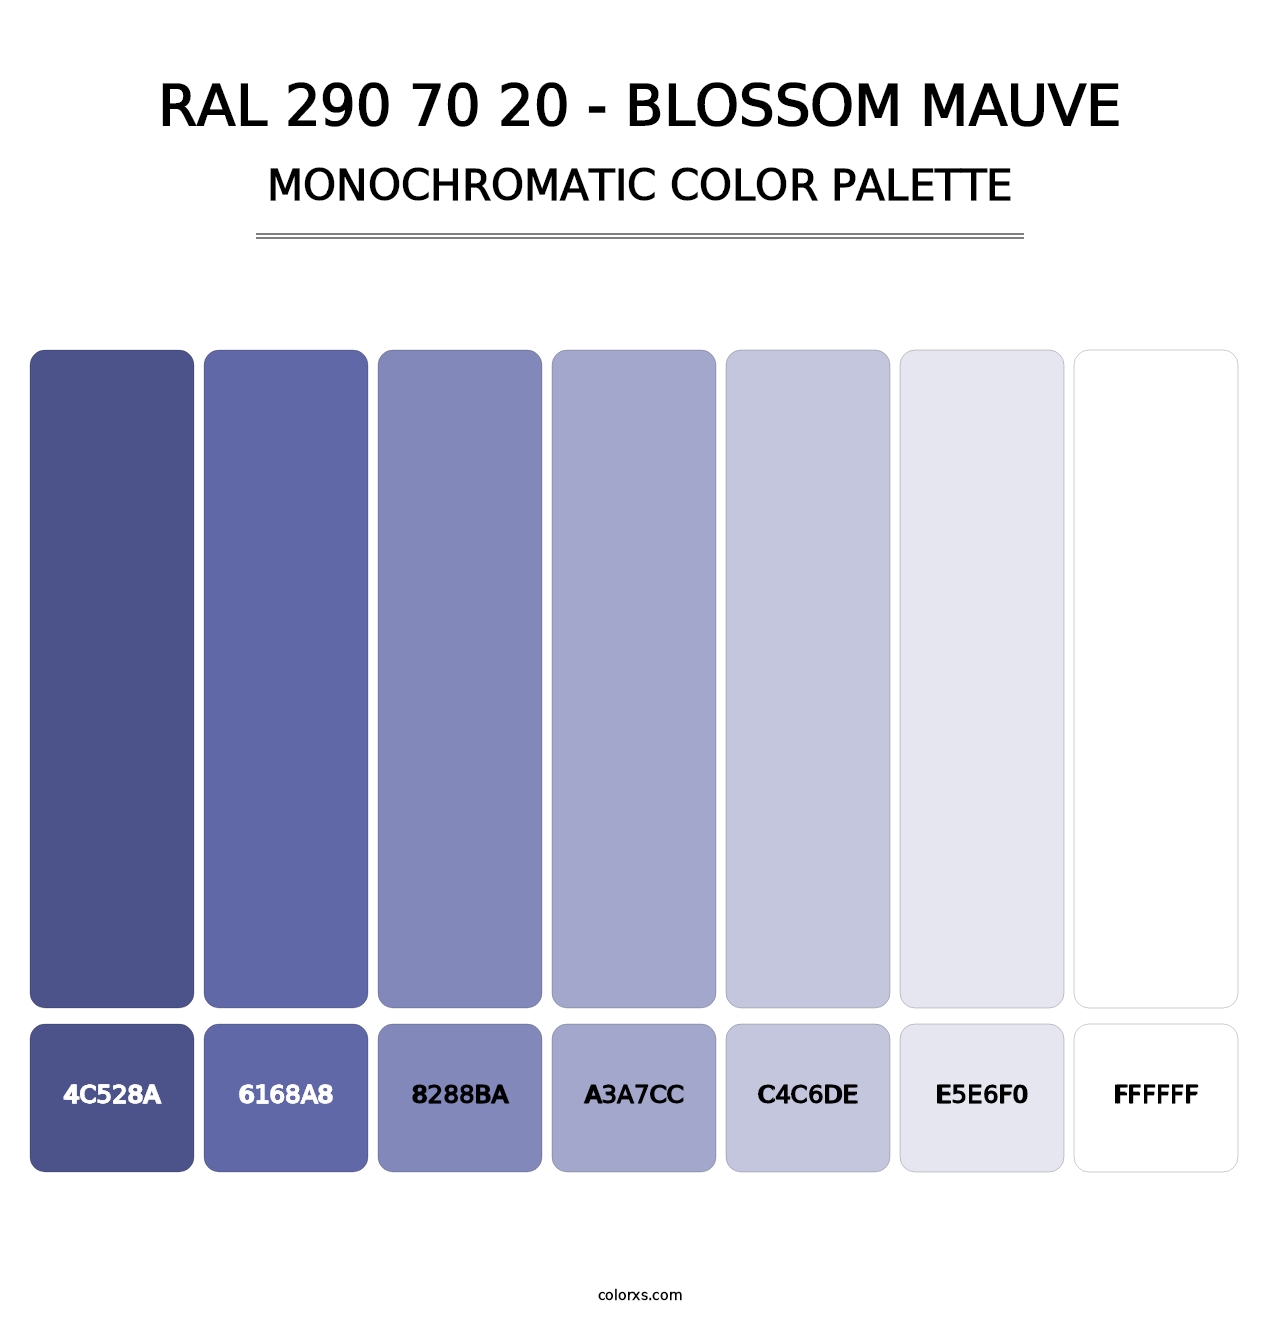 RAL 290 70 20 - Blossom Mauve - Monochromatic Color Palette